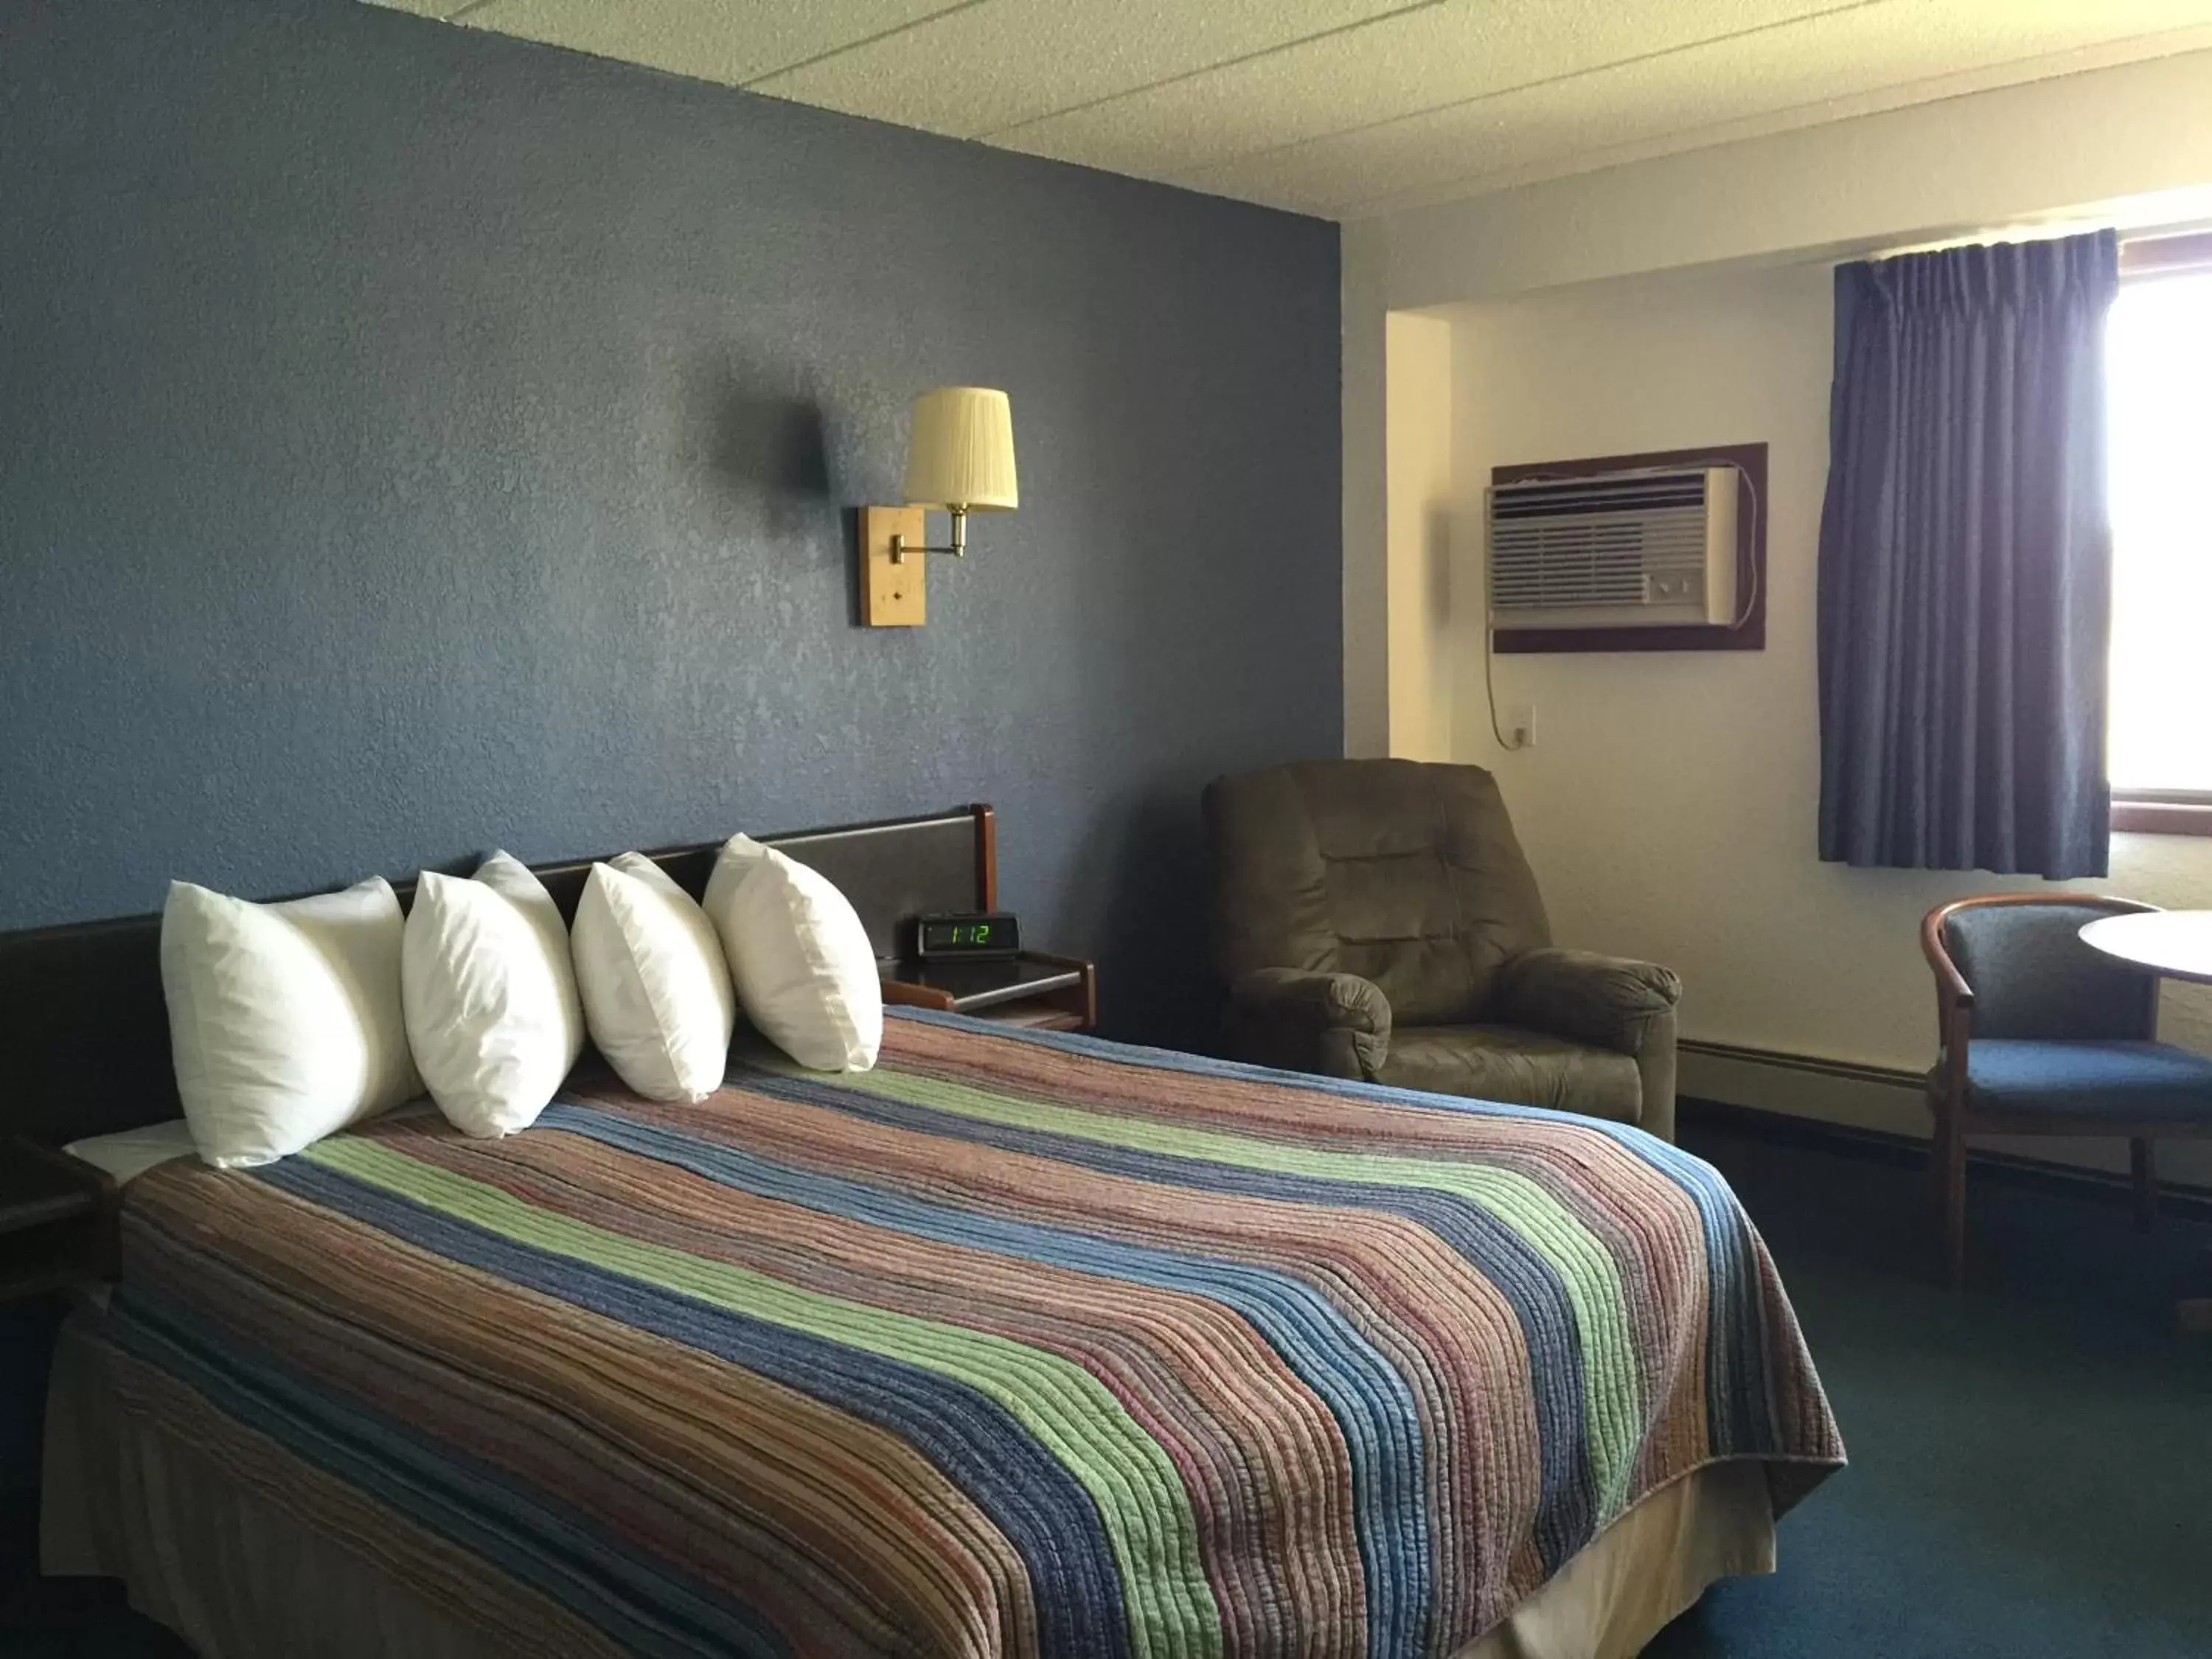 Bed, Room Photo in AmericInn Motel - Monticello